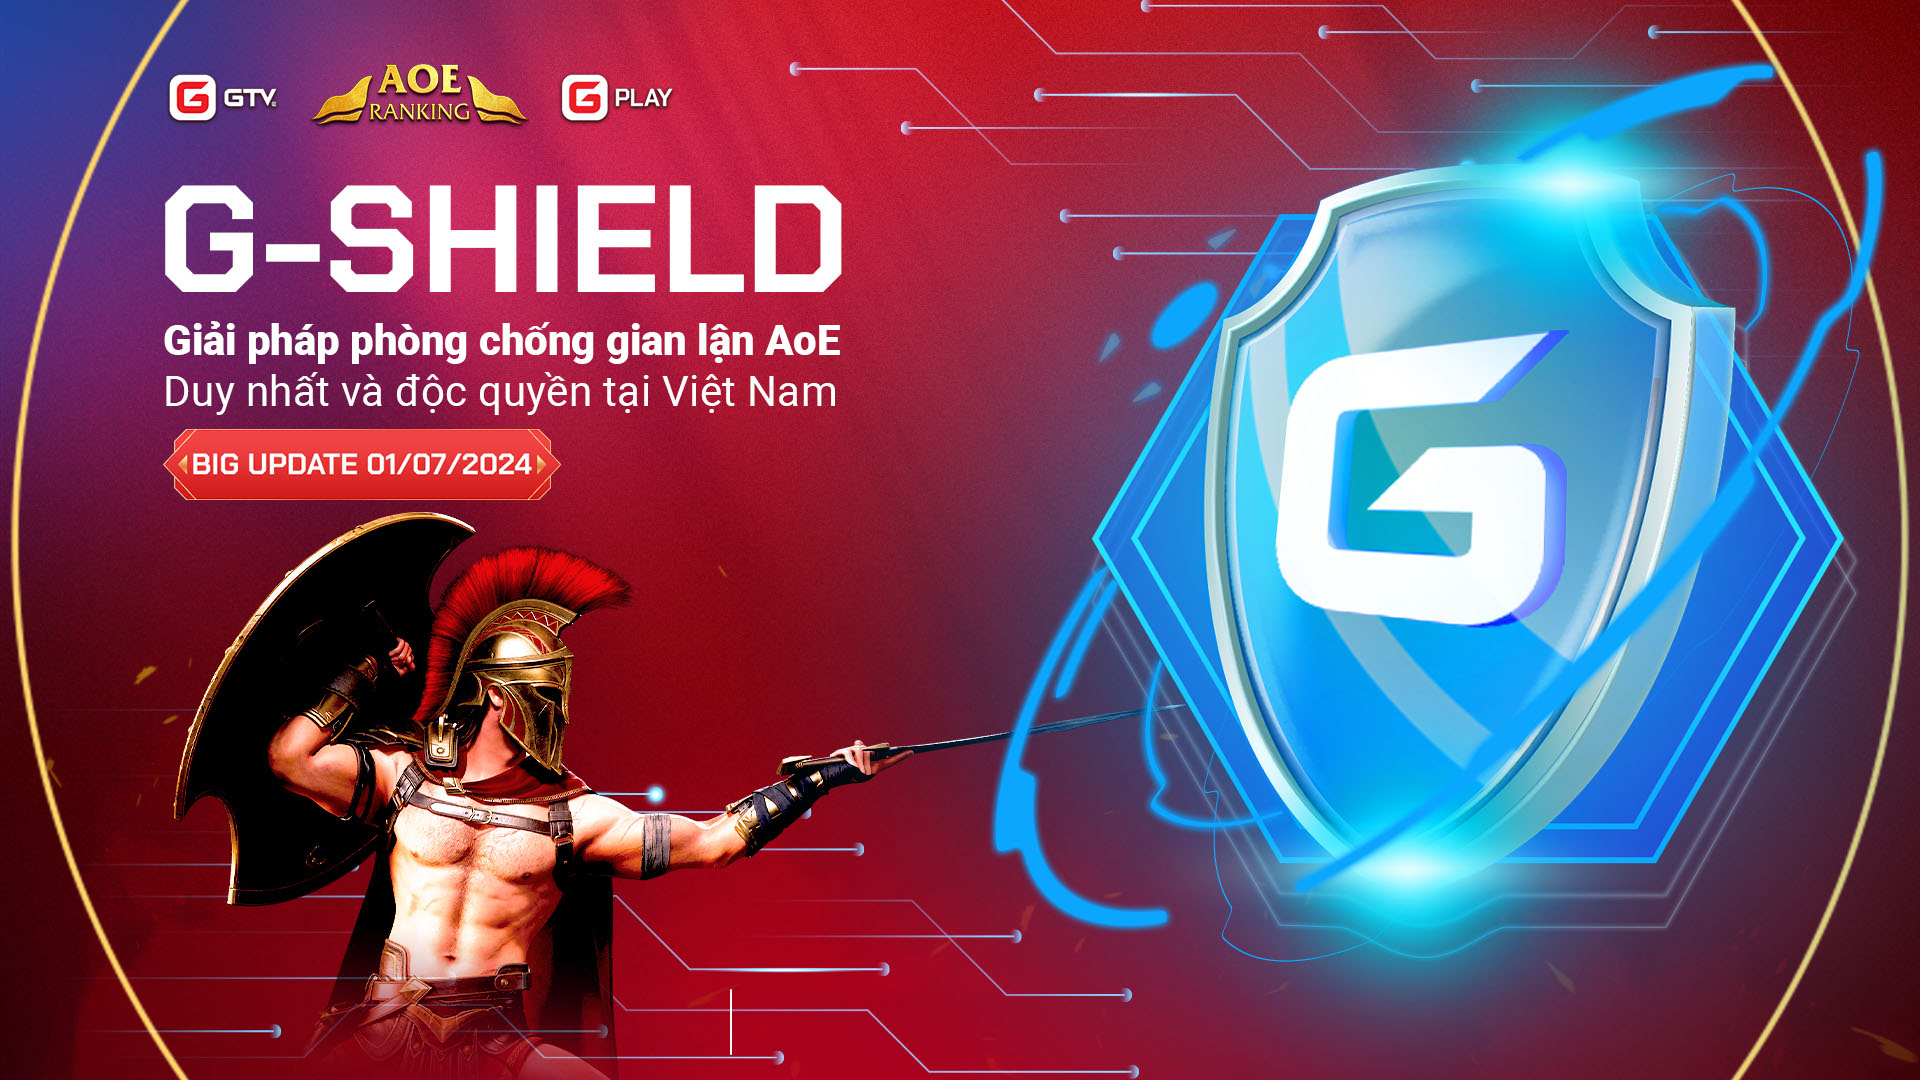 Bom tấn BIG UPDATE 01/07: G-Shield, giải pháp phòng chống gian lận AoE độc quyền tại Việt Nam